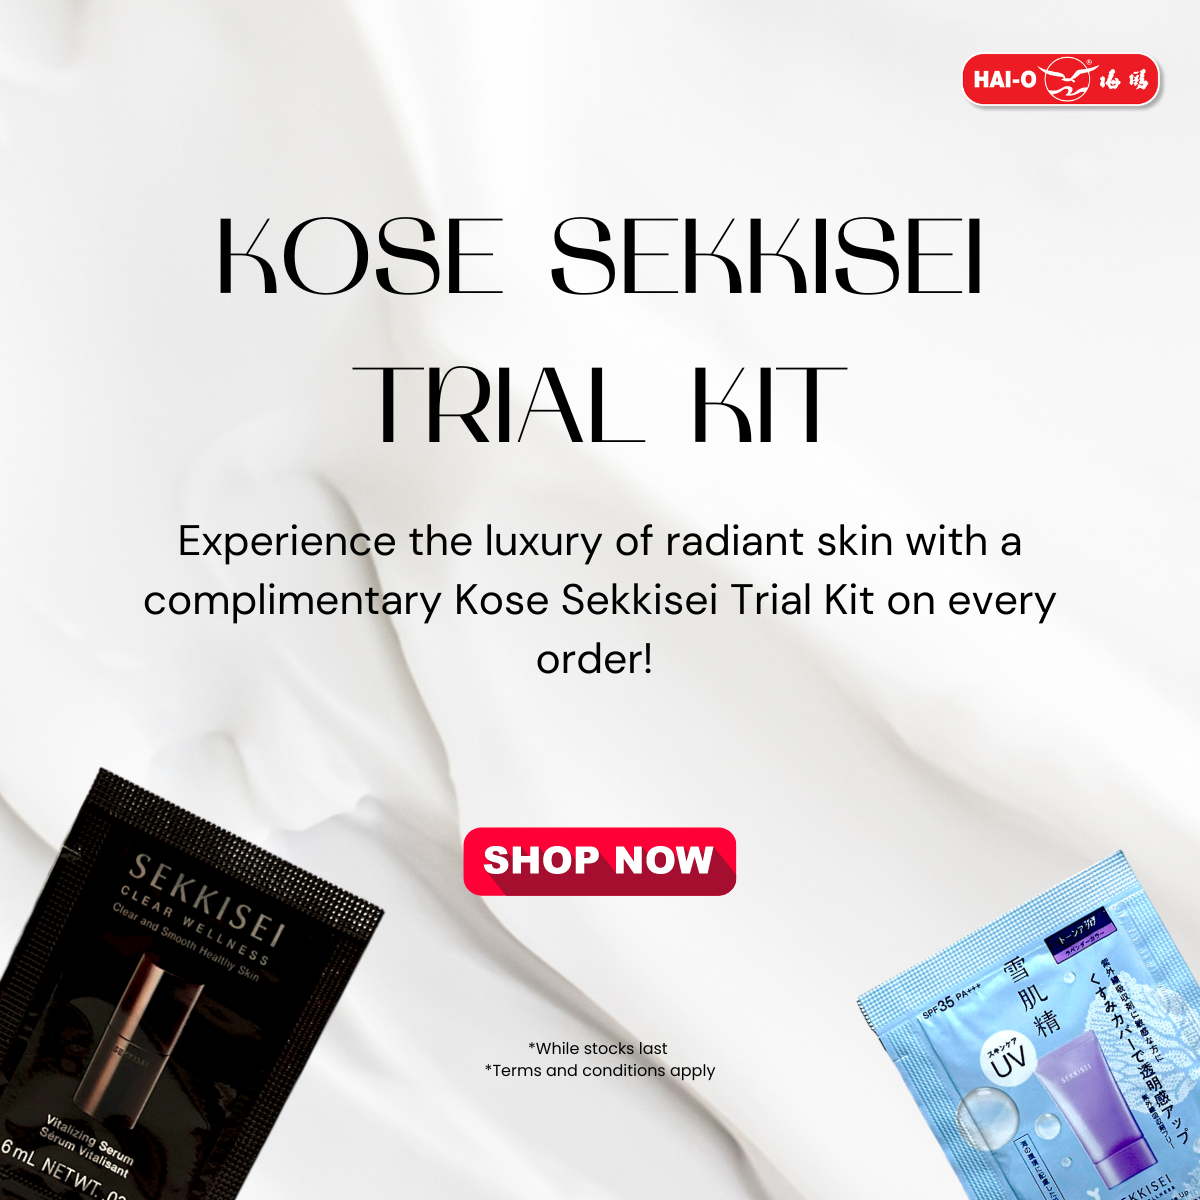 KOSE Malaysia - Kose Sekkisei Trial Kit Giveaway